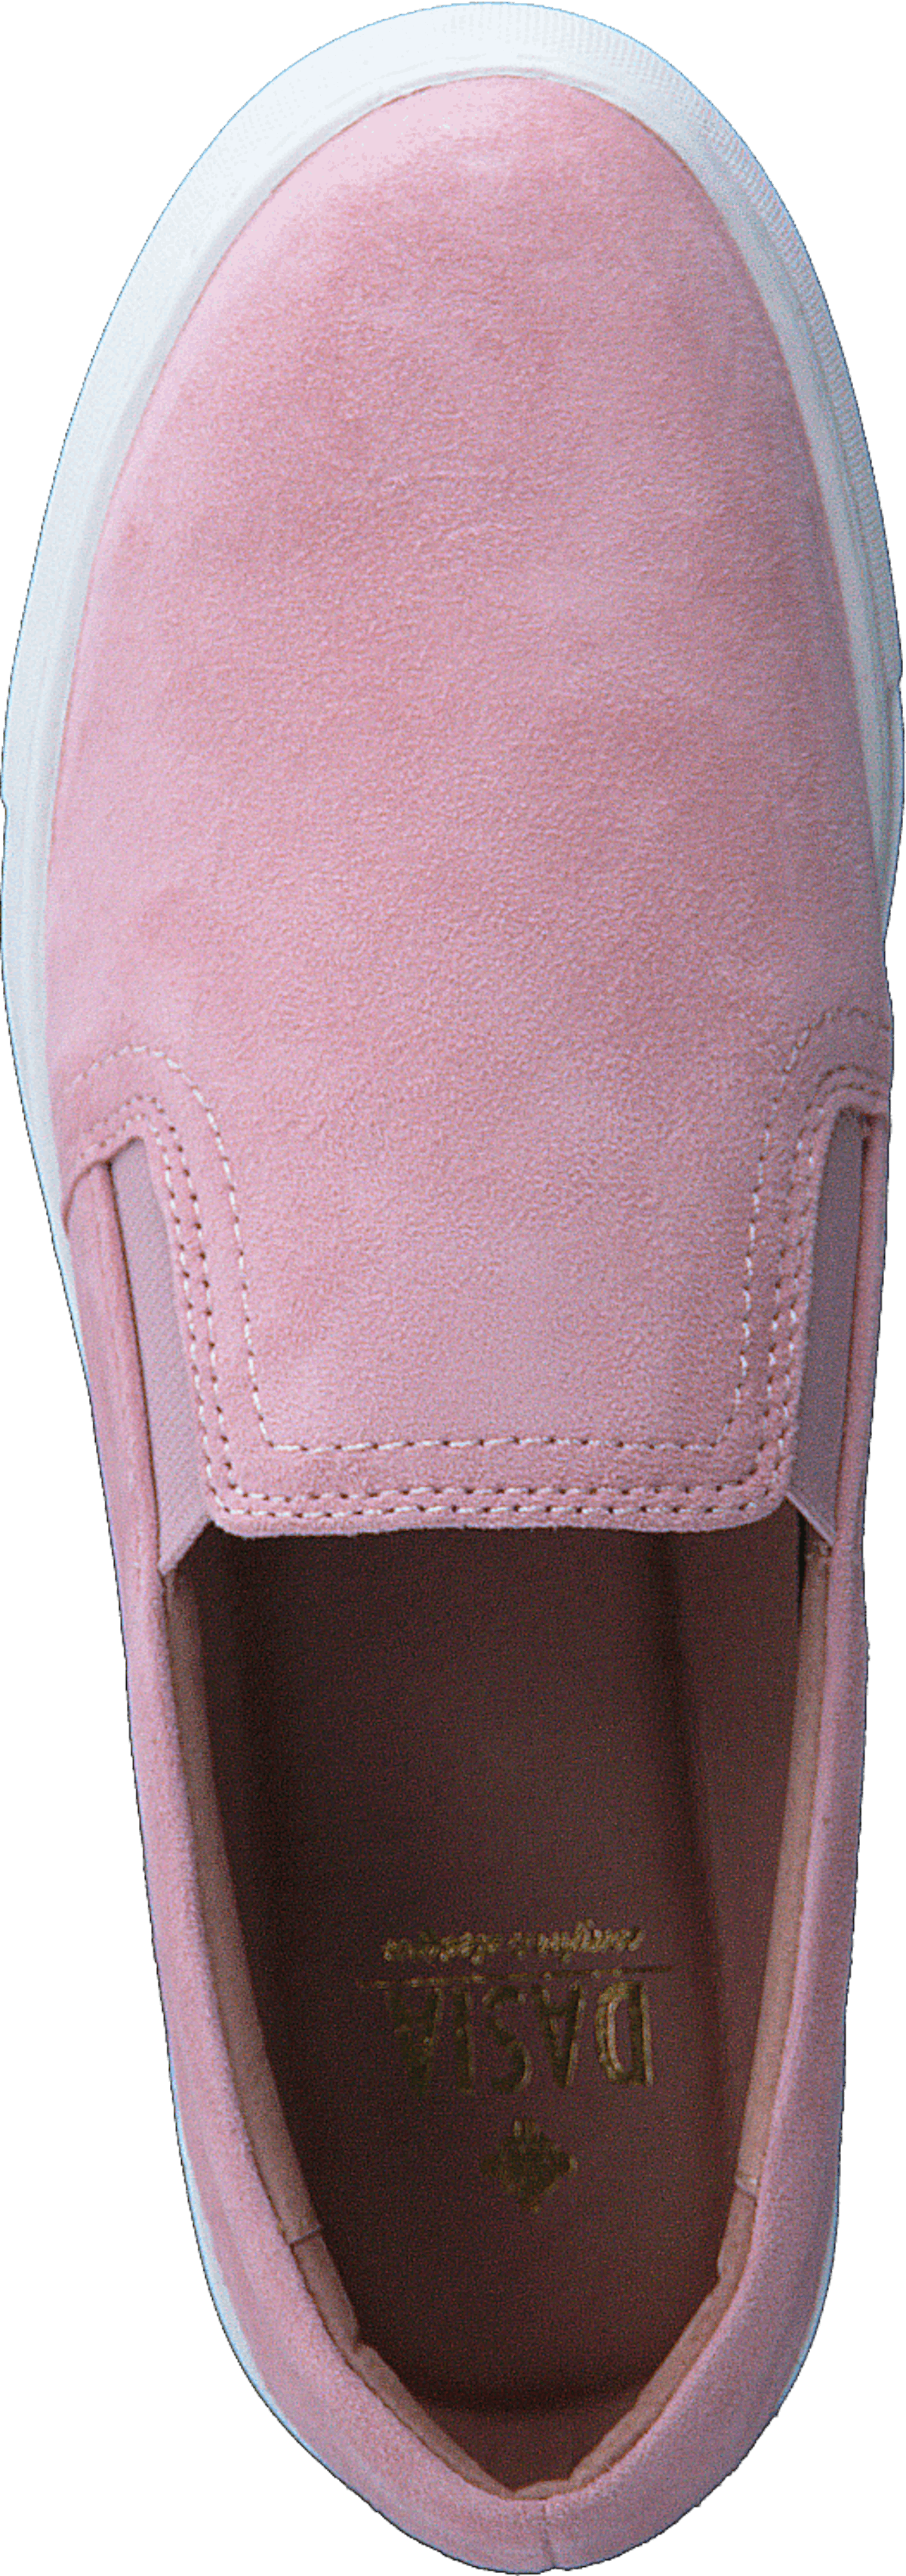 Daylily Slip-on Pink